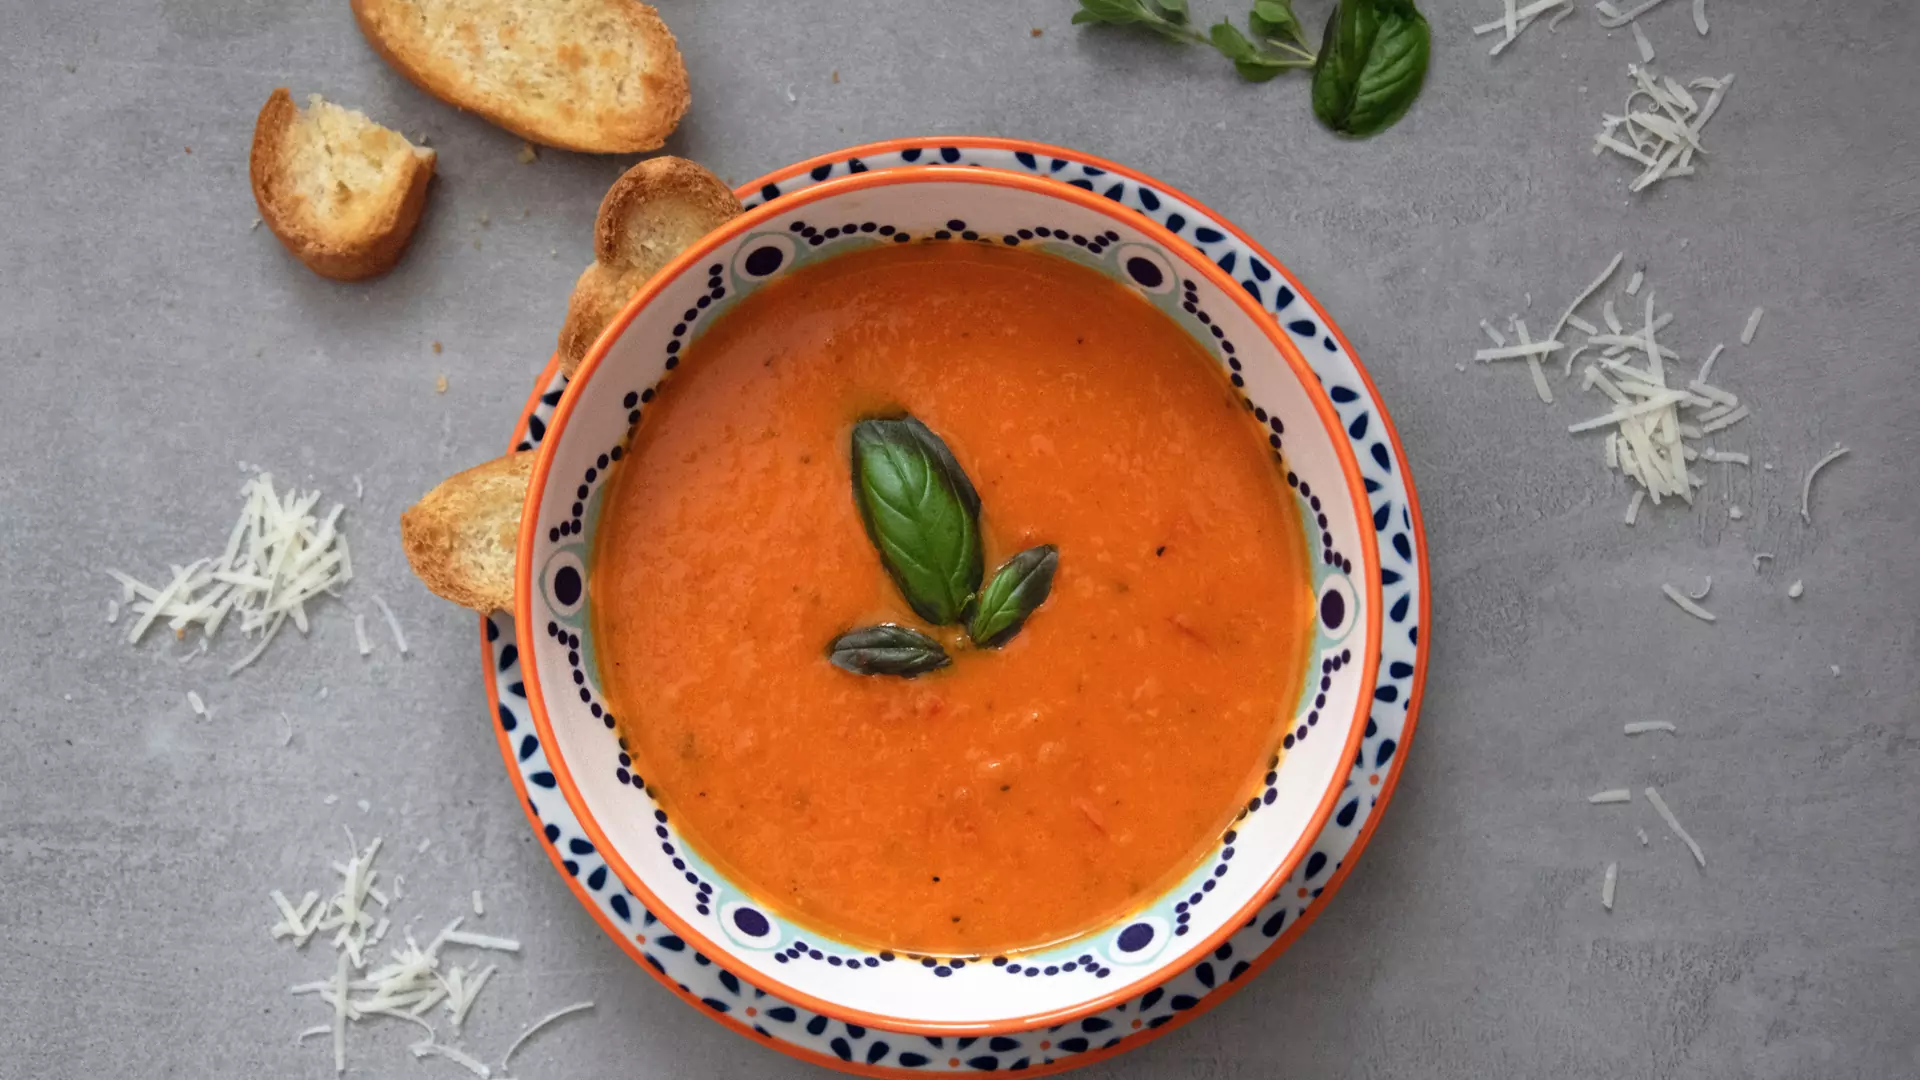 Najprostszy przepis na zupę pomidorową od Magdy Gessler. Zastosuj ten trik